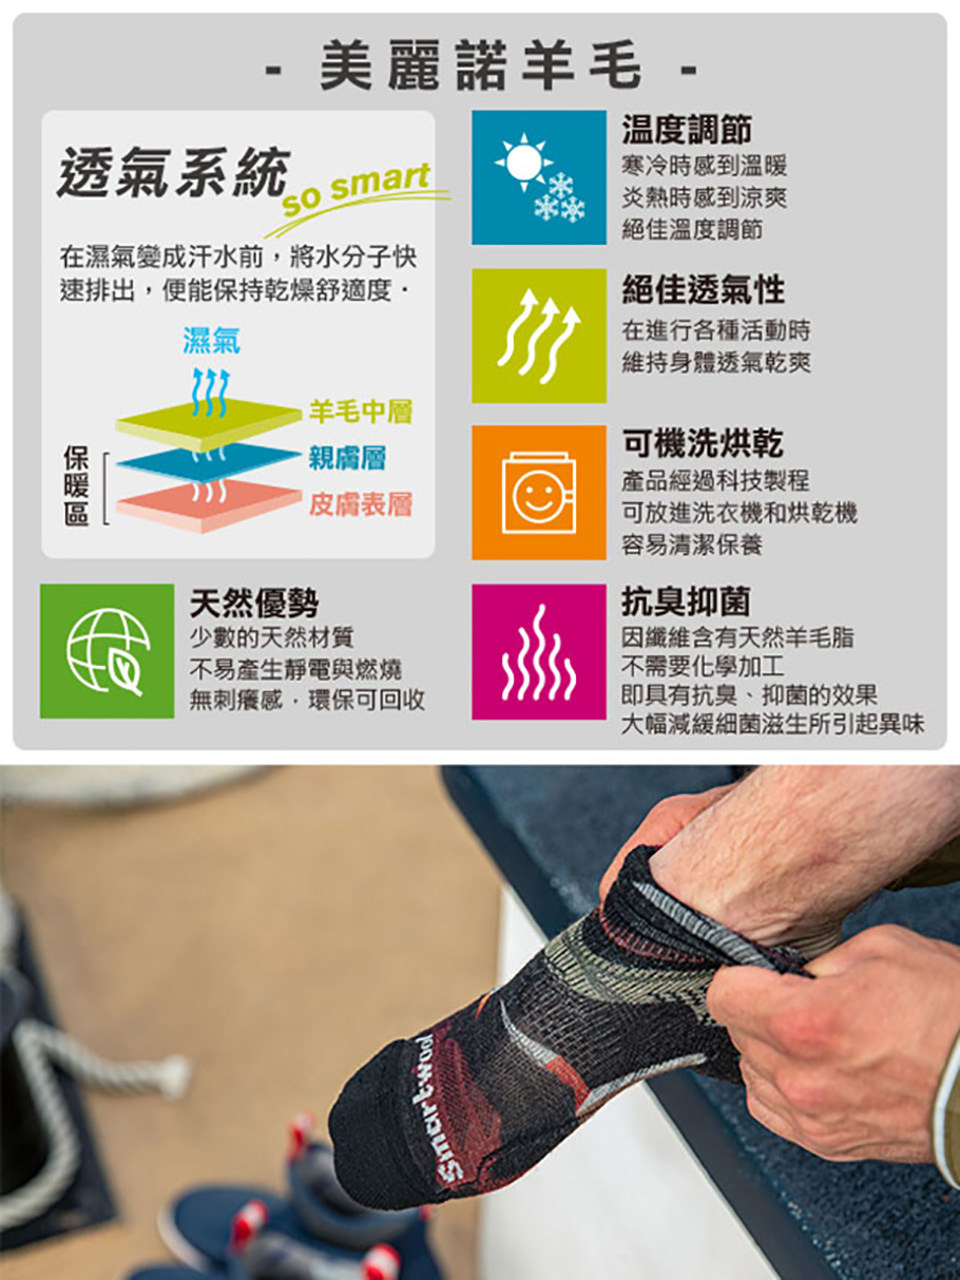 SmartWool 機能跑步超輕減震低筒襪(軍風橄綠)優惠推